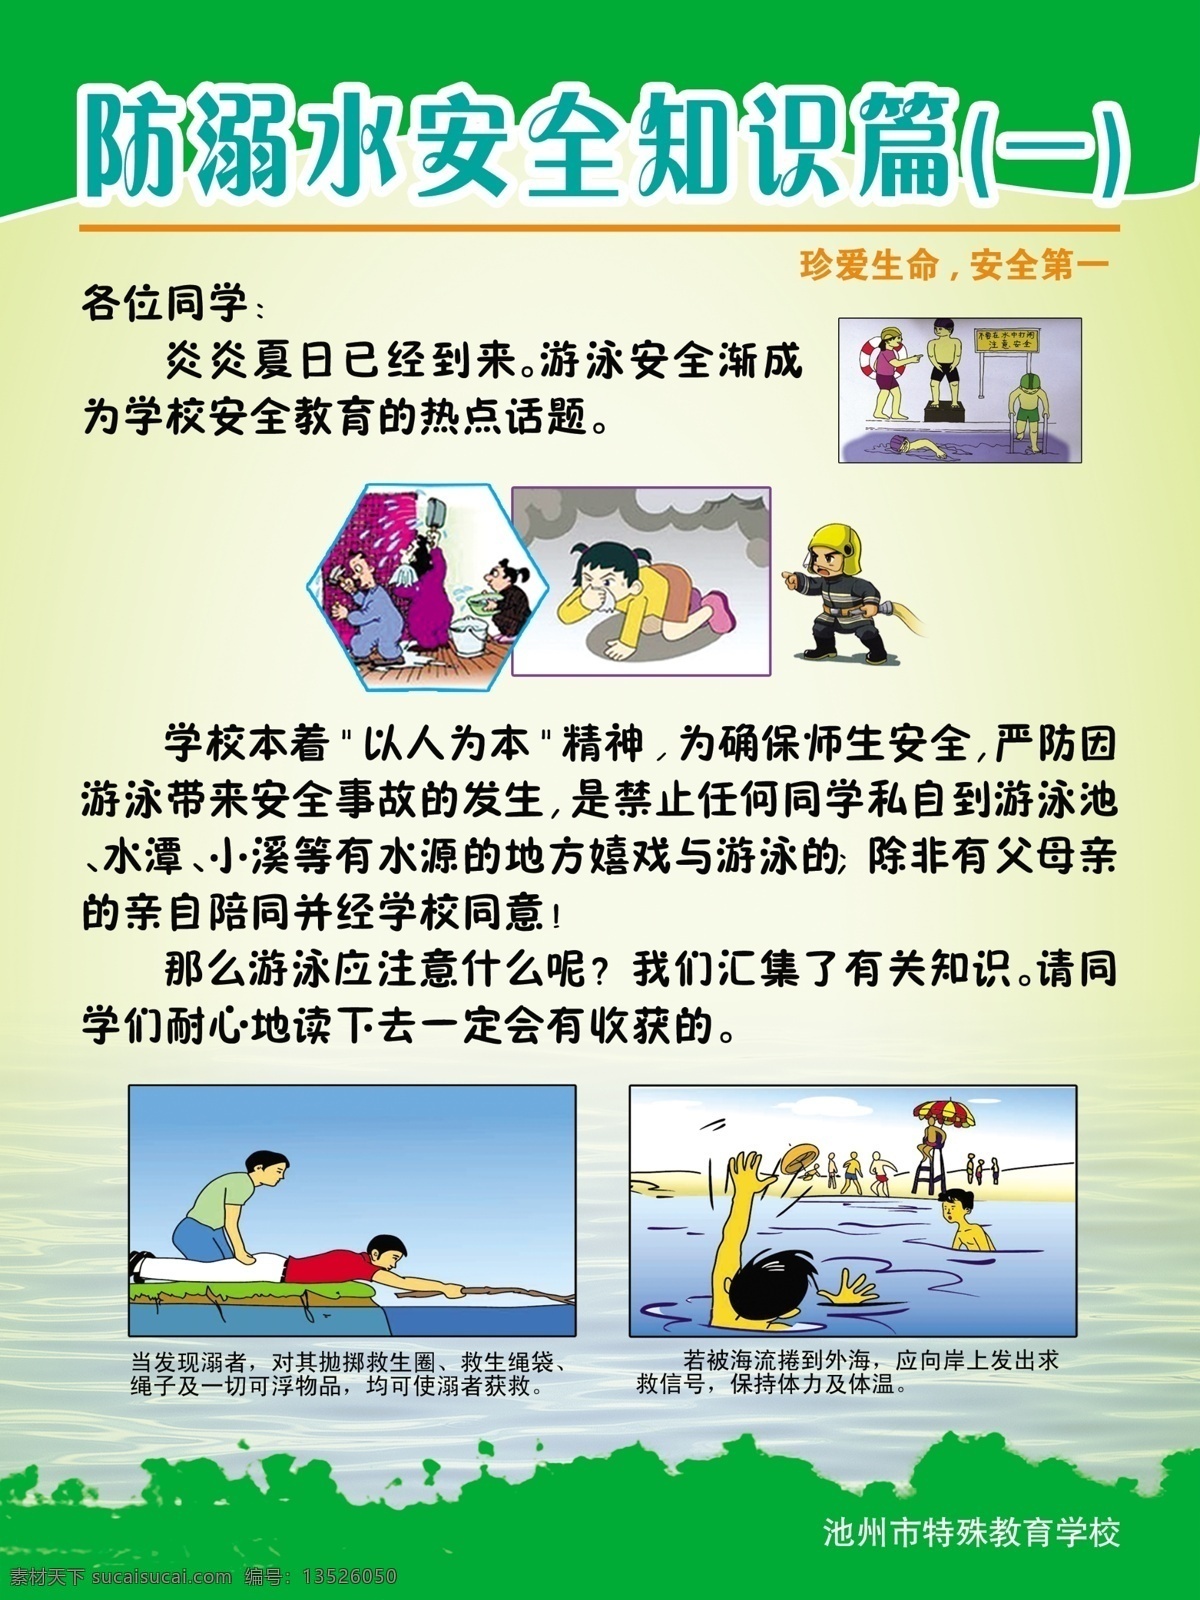 防 溺水 安全 知识 展板 防溺水 安全守则 游泳 漫画 展板模板 广告设计模板 psd素材 白色